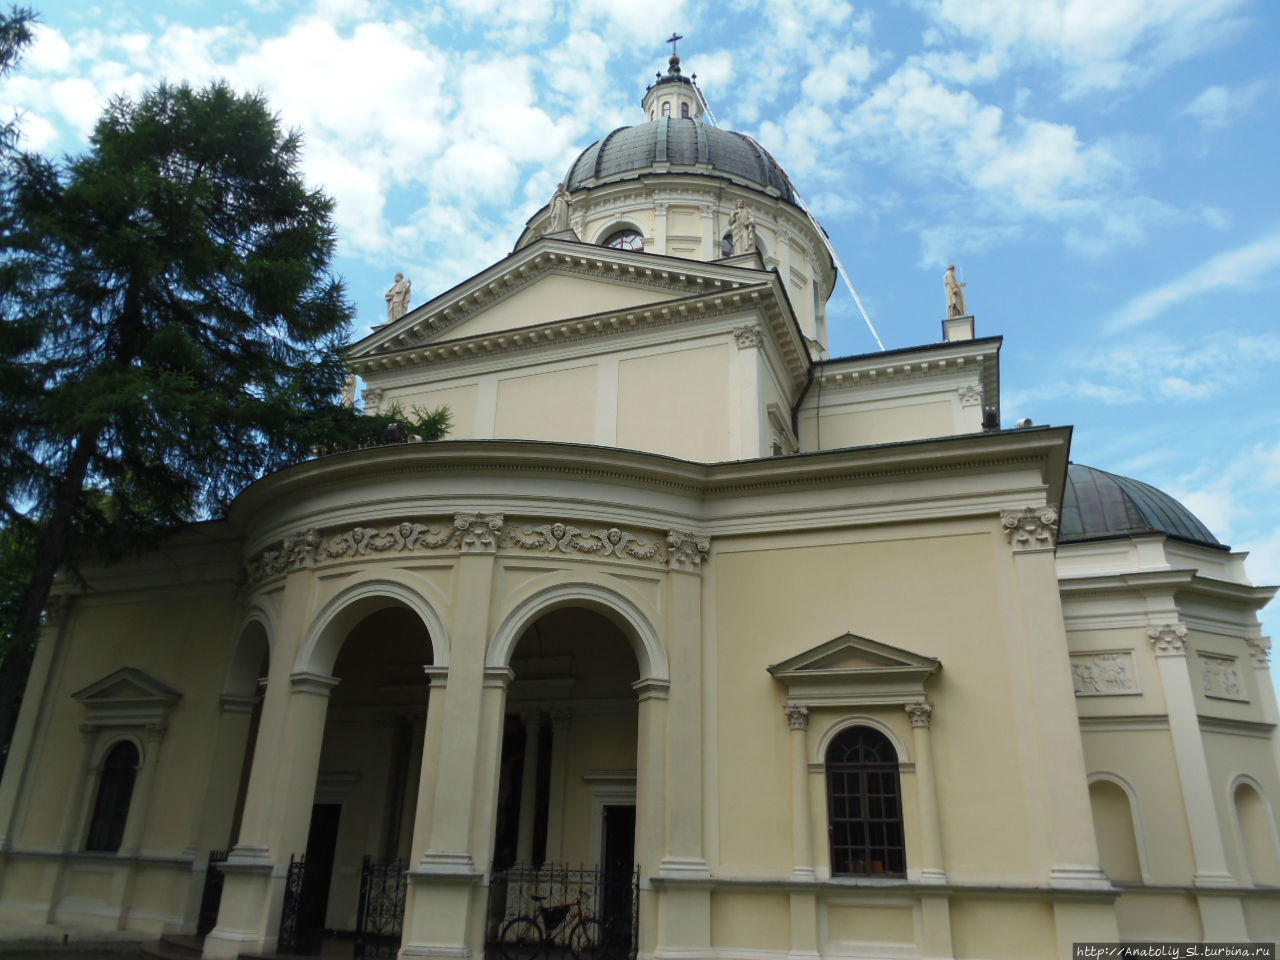 Вилянув. Часть 1. Костел святой Анны Варшава, Польша